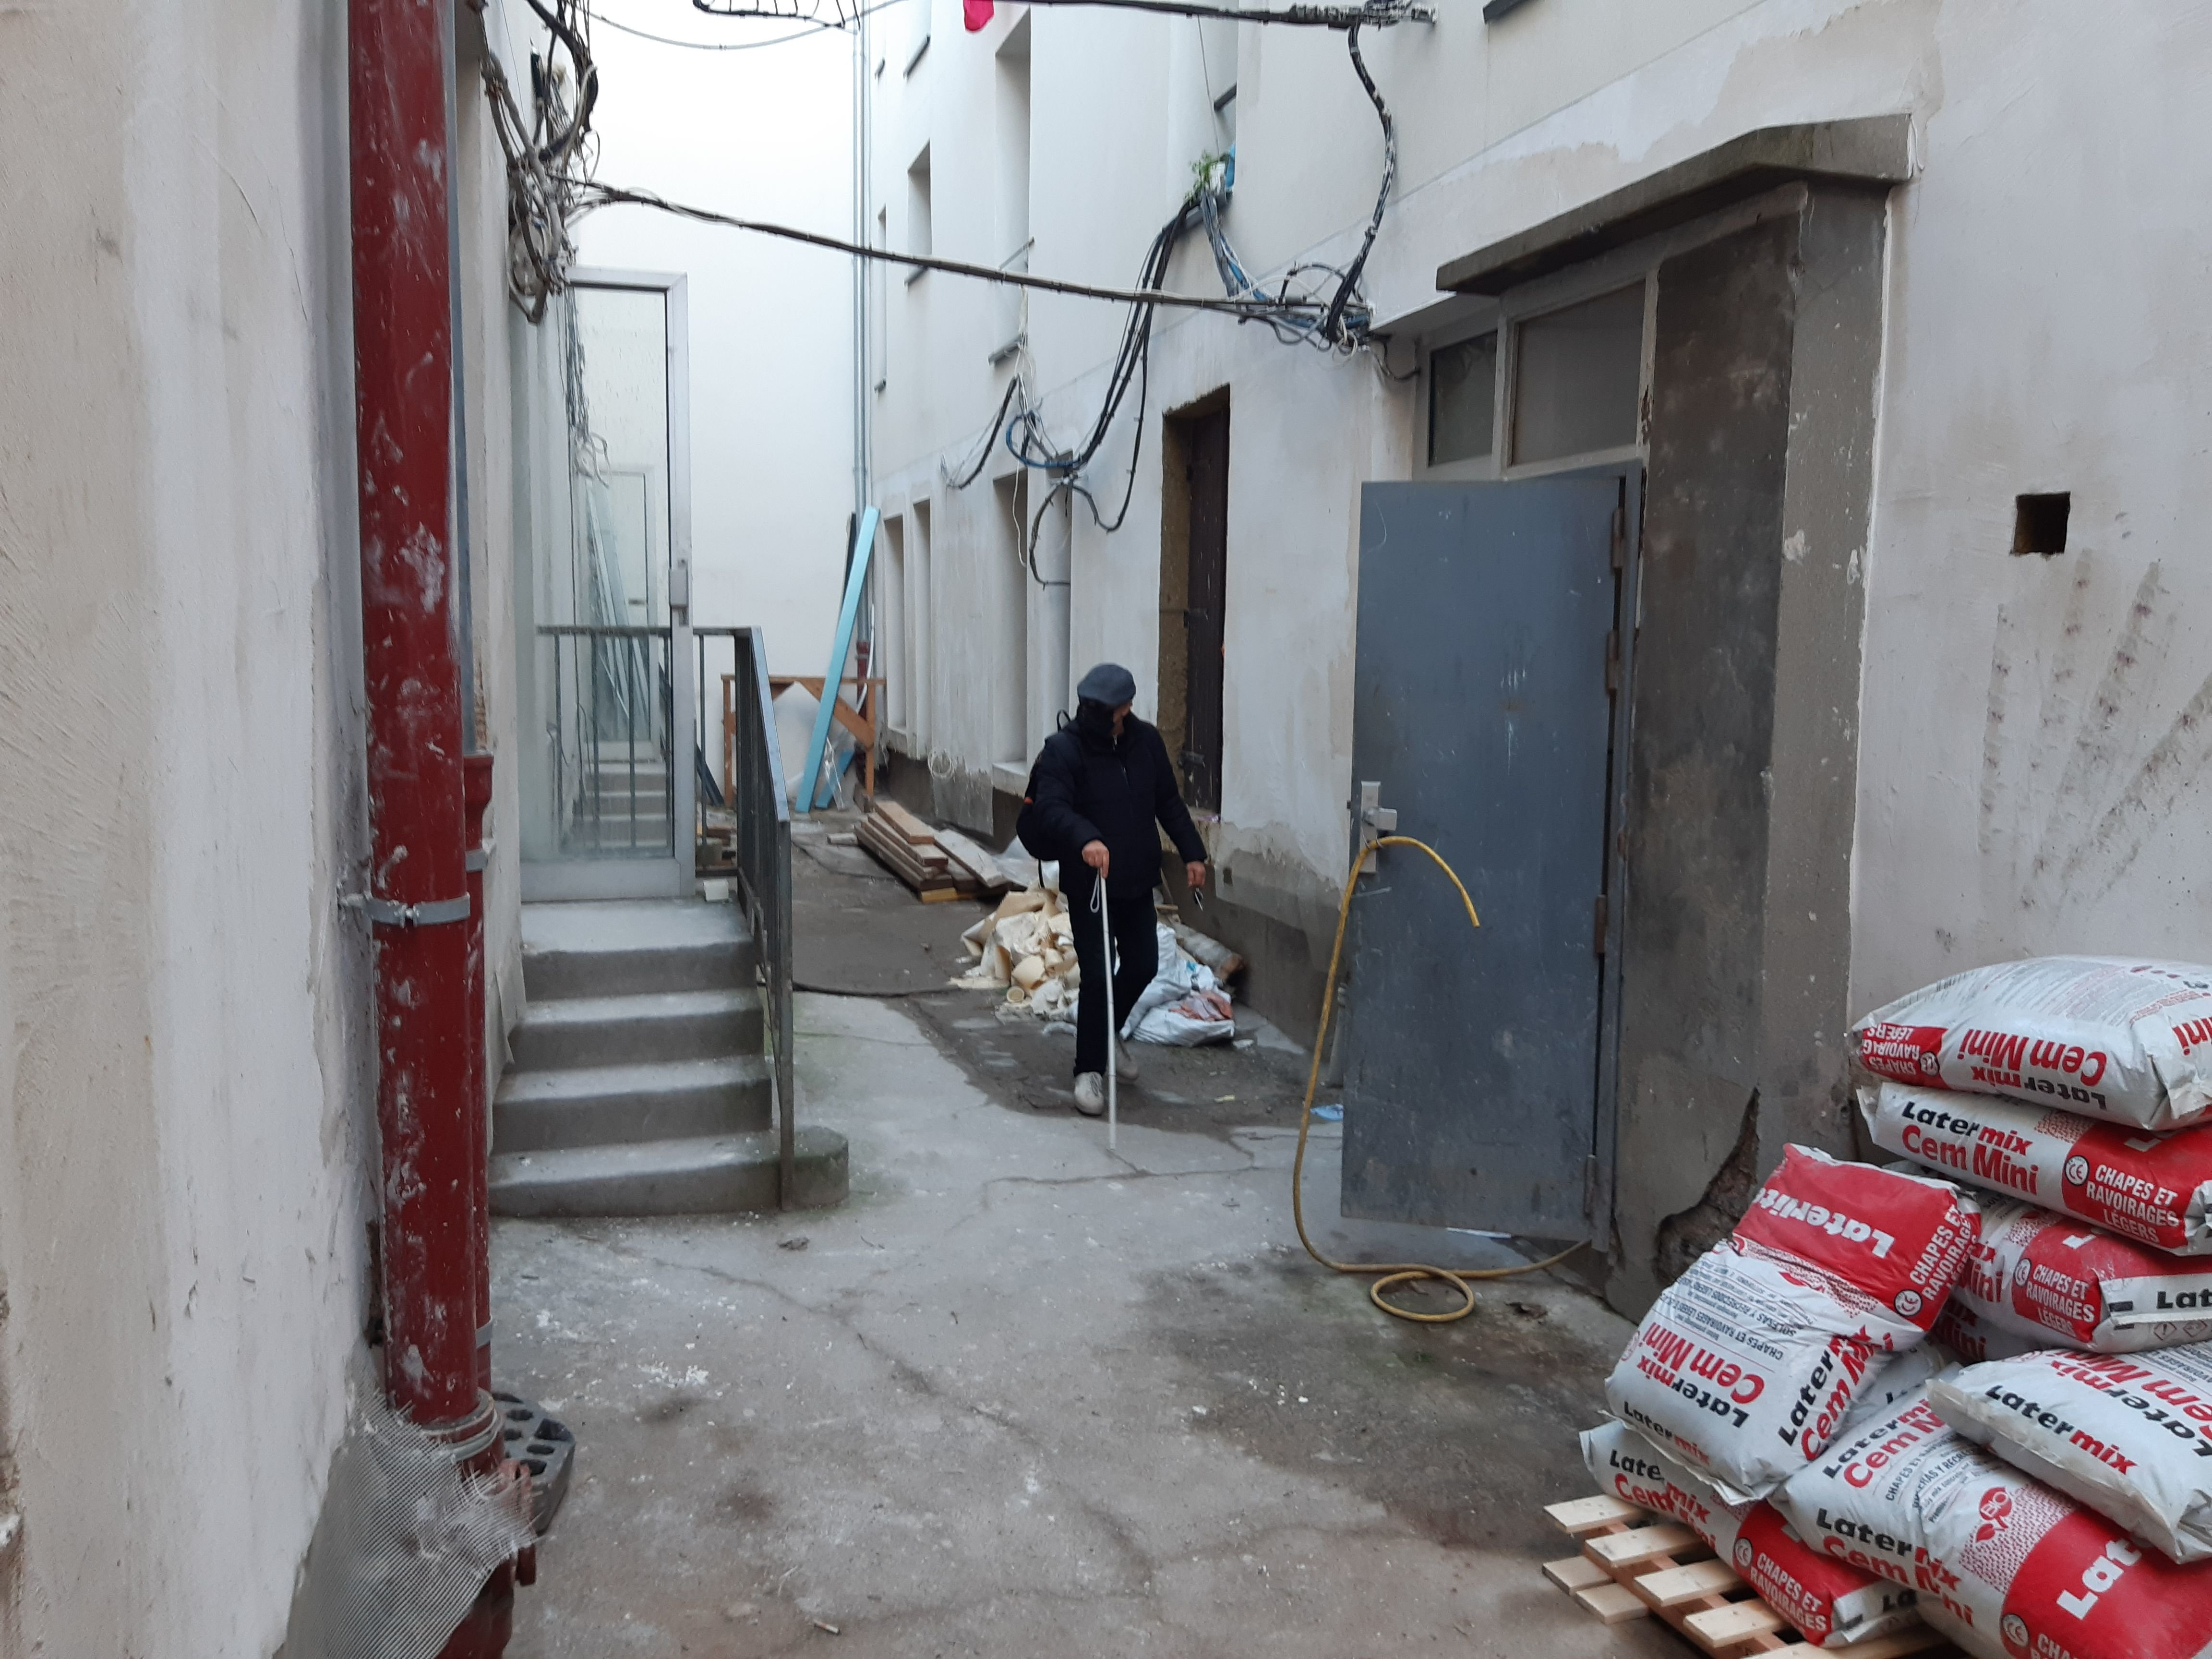 Le Pré-Saint-Gervais, le 7 février 2022. Yahia, 73 ans, est le dernier occupant d'un immeuble du quartier des Sept-Arpents, en réhabilitation. Personne n'arrive à lui trouver une solution de relogement et sa présence bloque les travaux. LP/Elsa Marnette